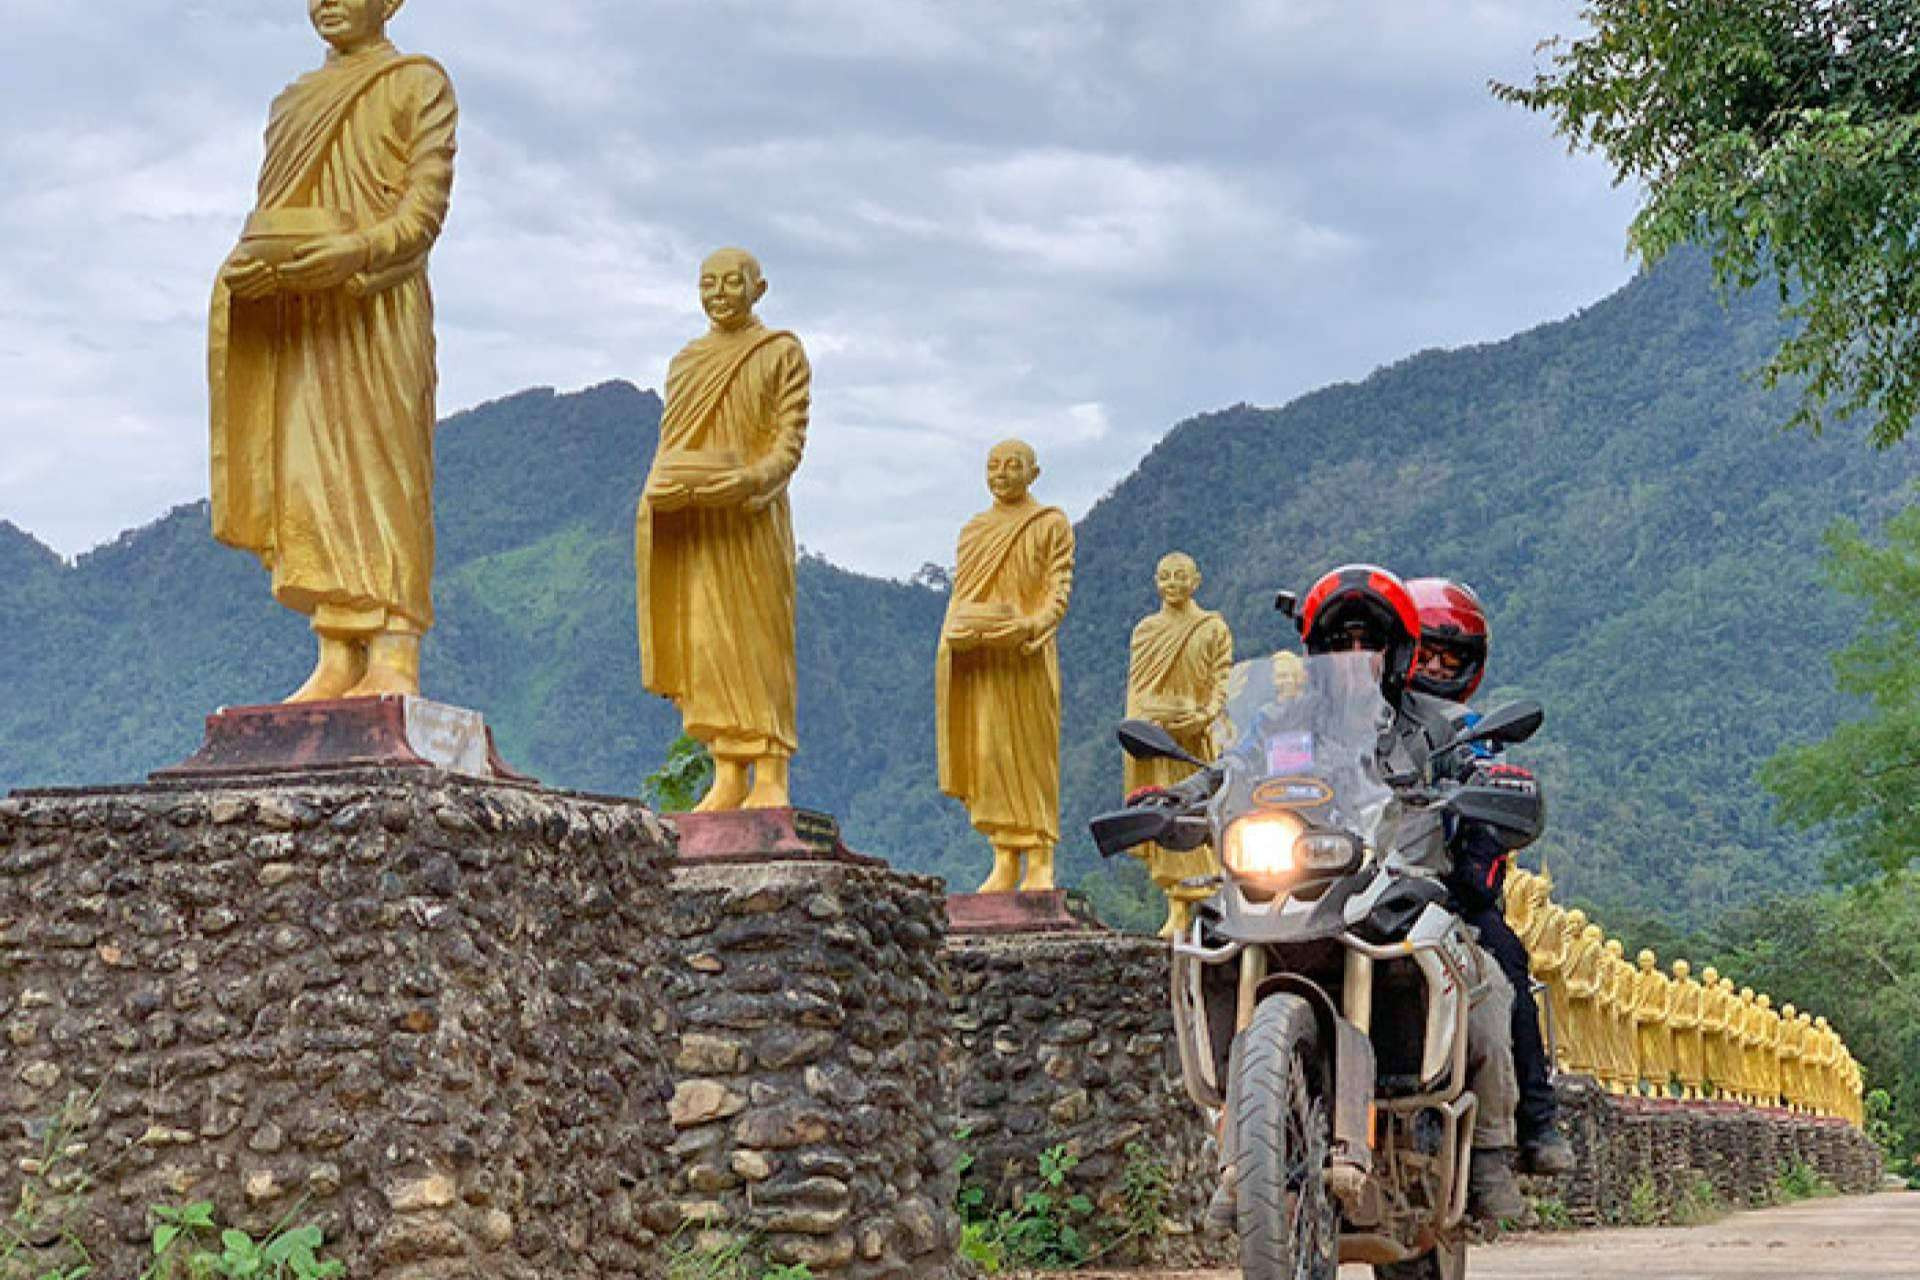  Recorrer Tailandia en moto y la carretera de las 1000 curvas 